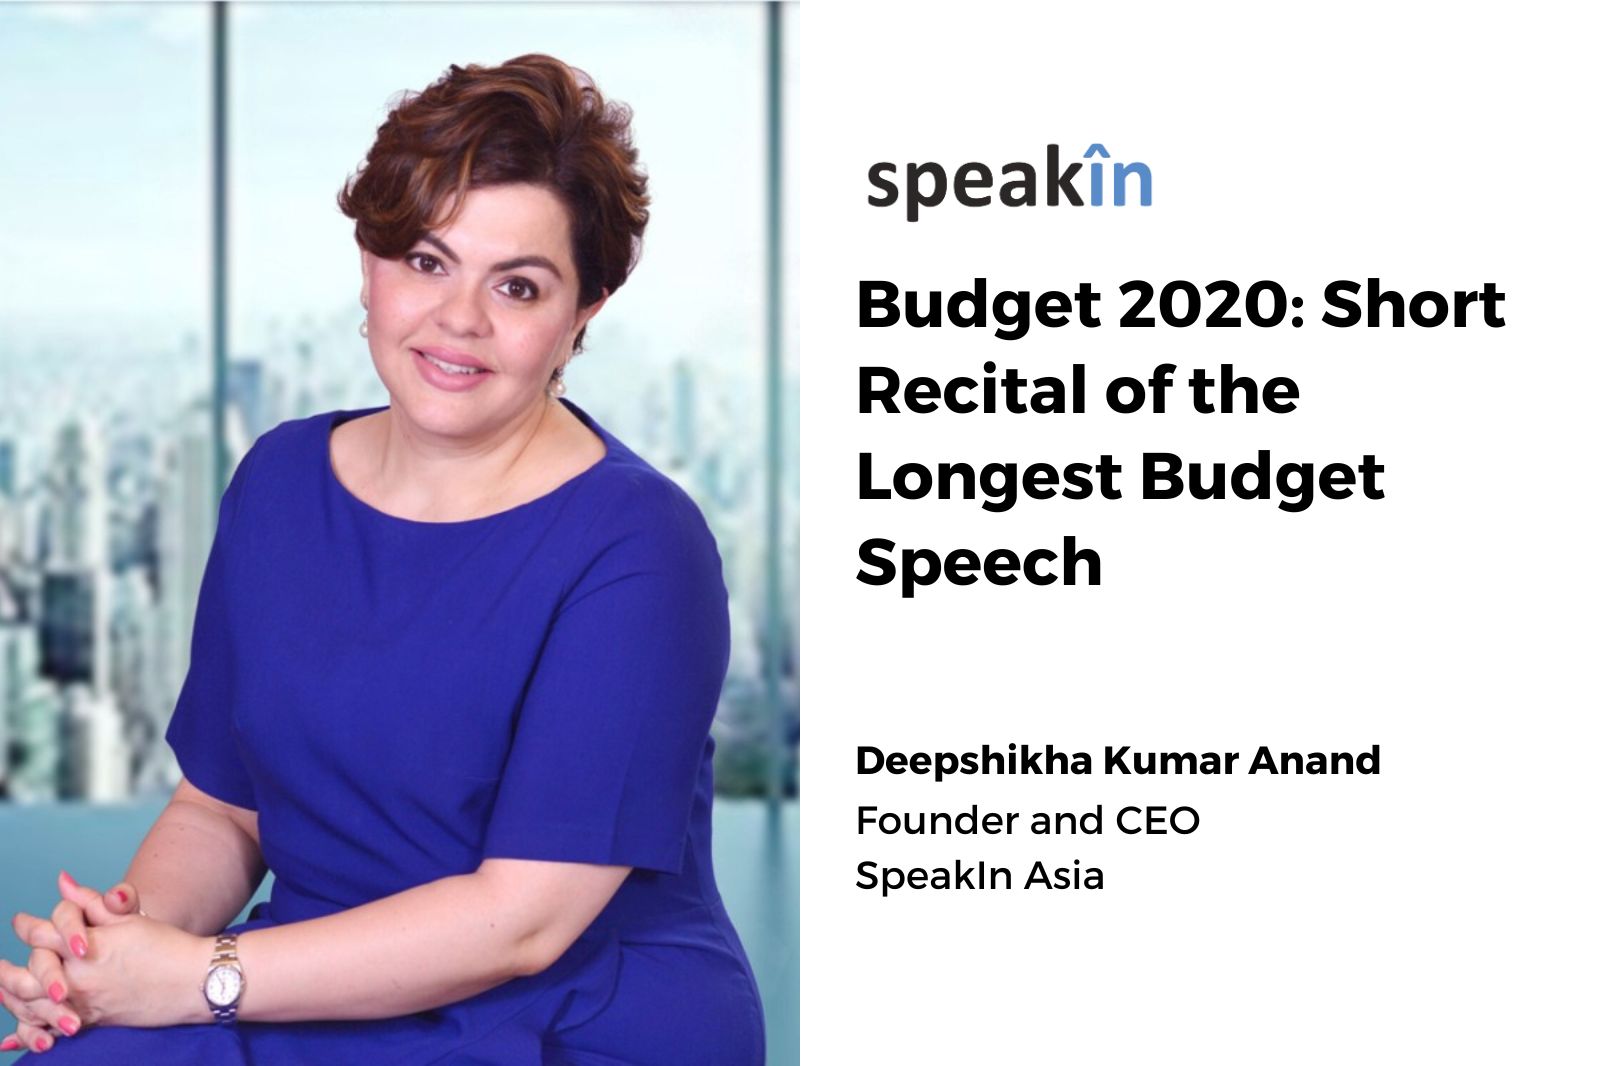 Budget 2020: Short Recital of the Longest Budget Speech